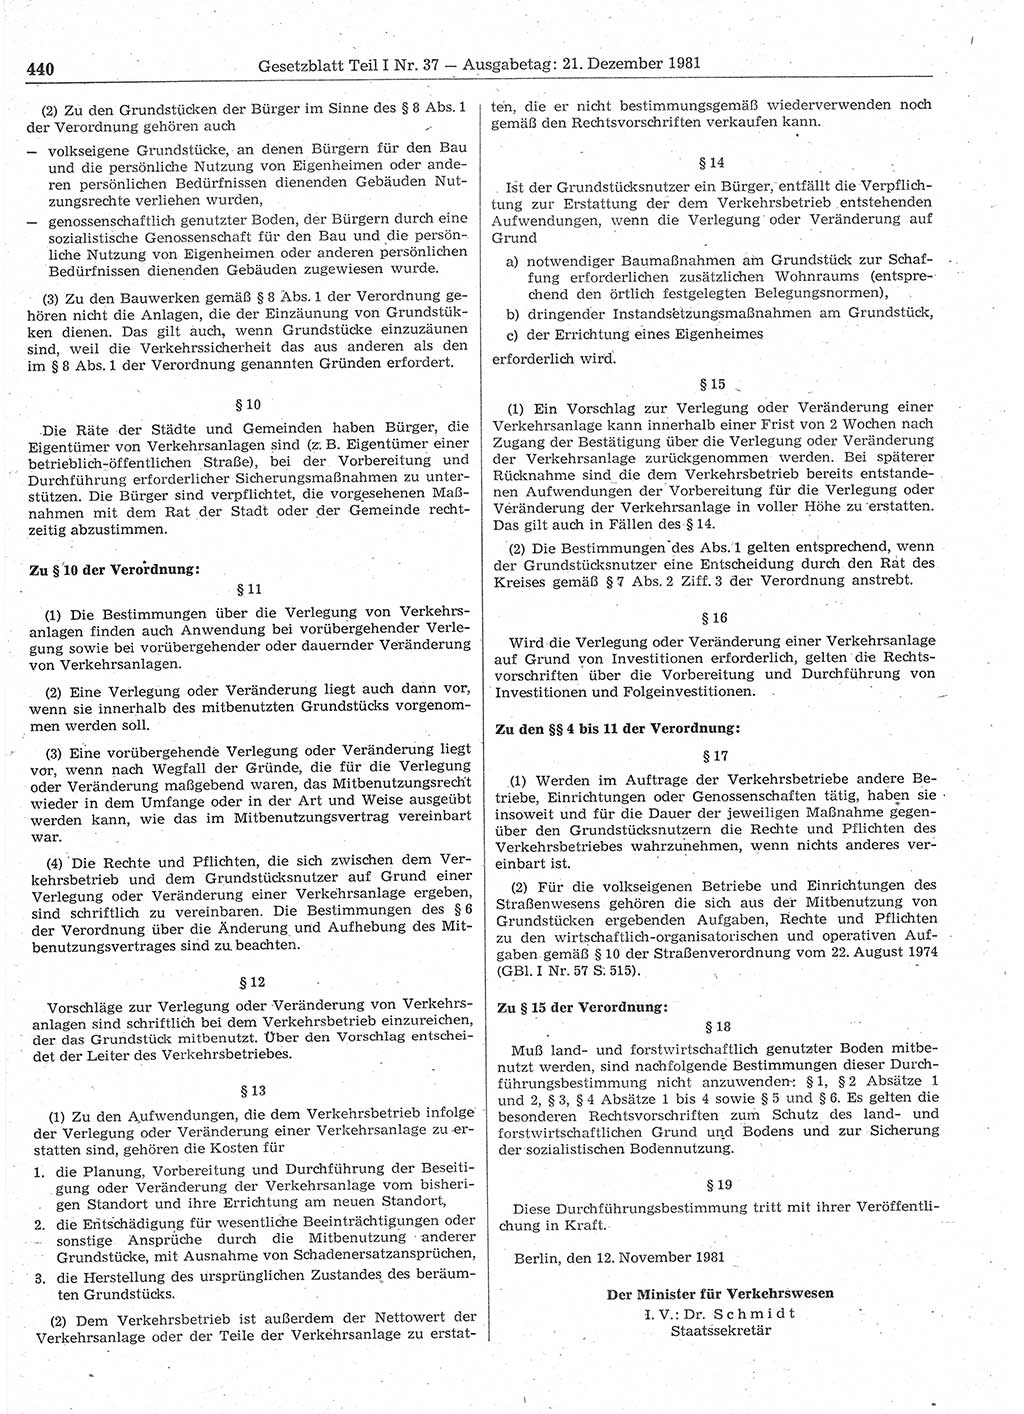 Gesetzblatt (GBl.) der Deutschen Demokratischen Republik (DDR) Teil Ⅰ 1981, Seite 440 (GBl. DDR Ⅰ 1981, S. 440)